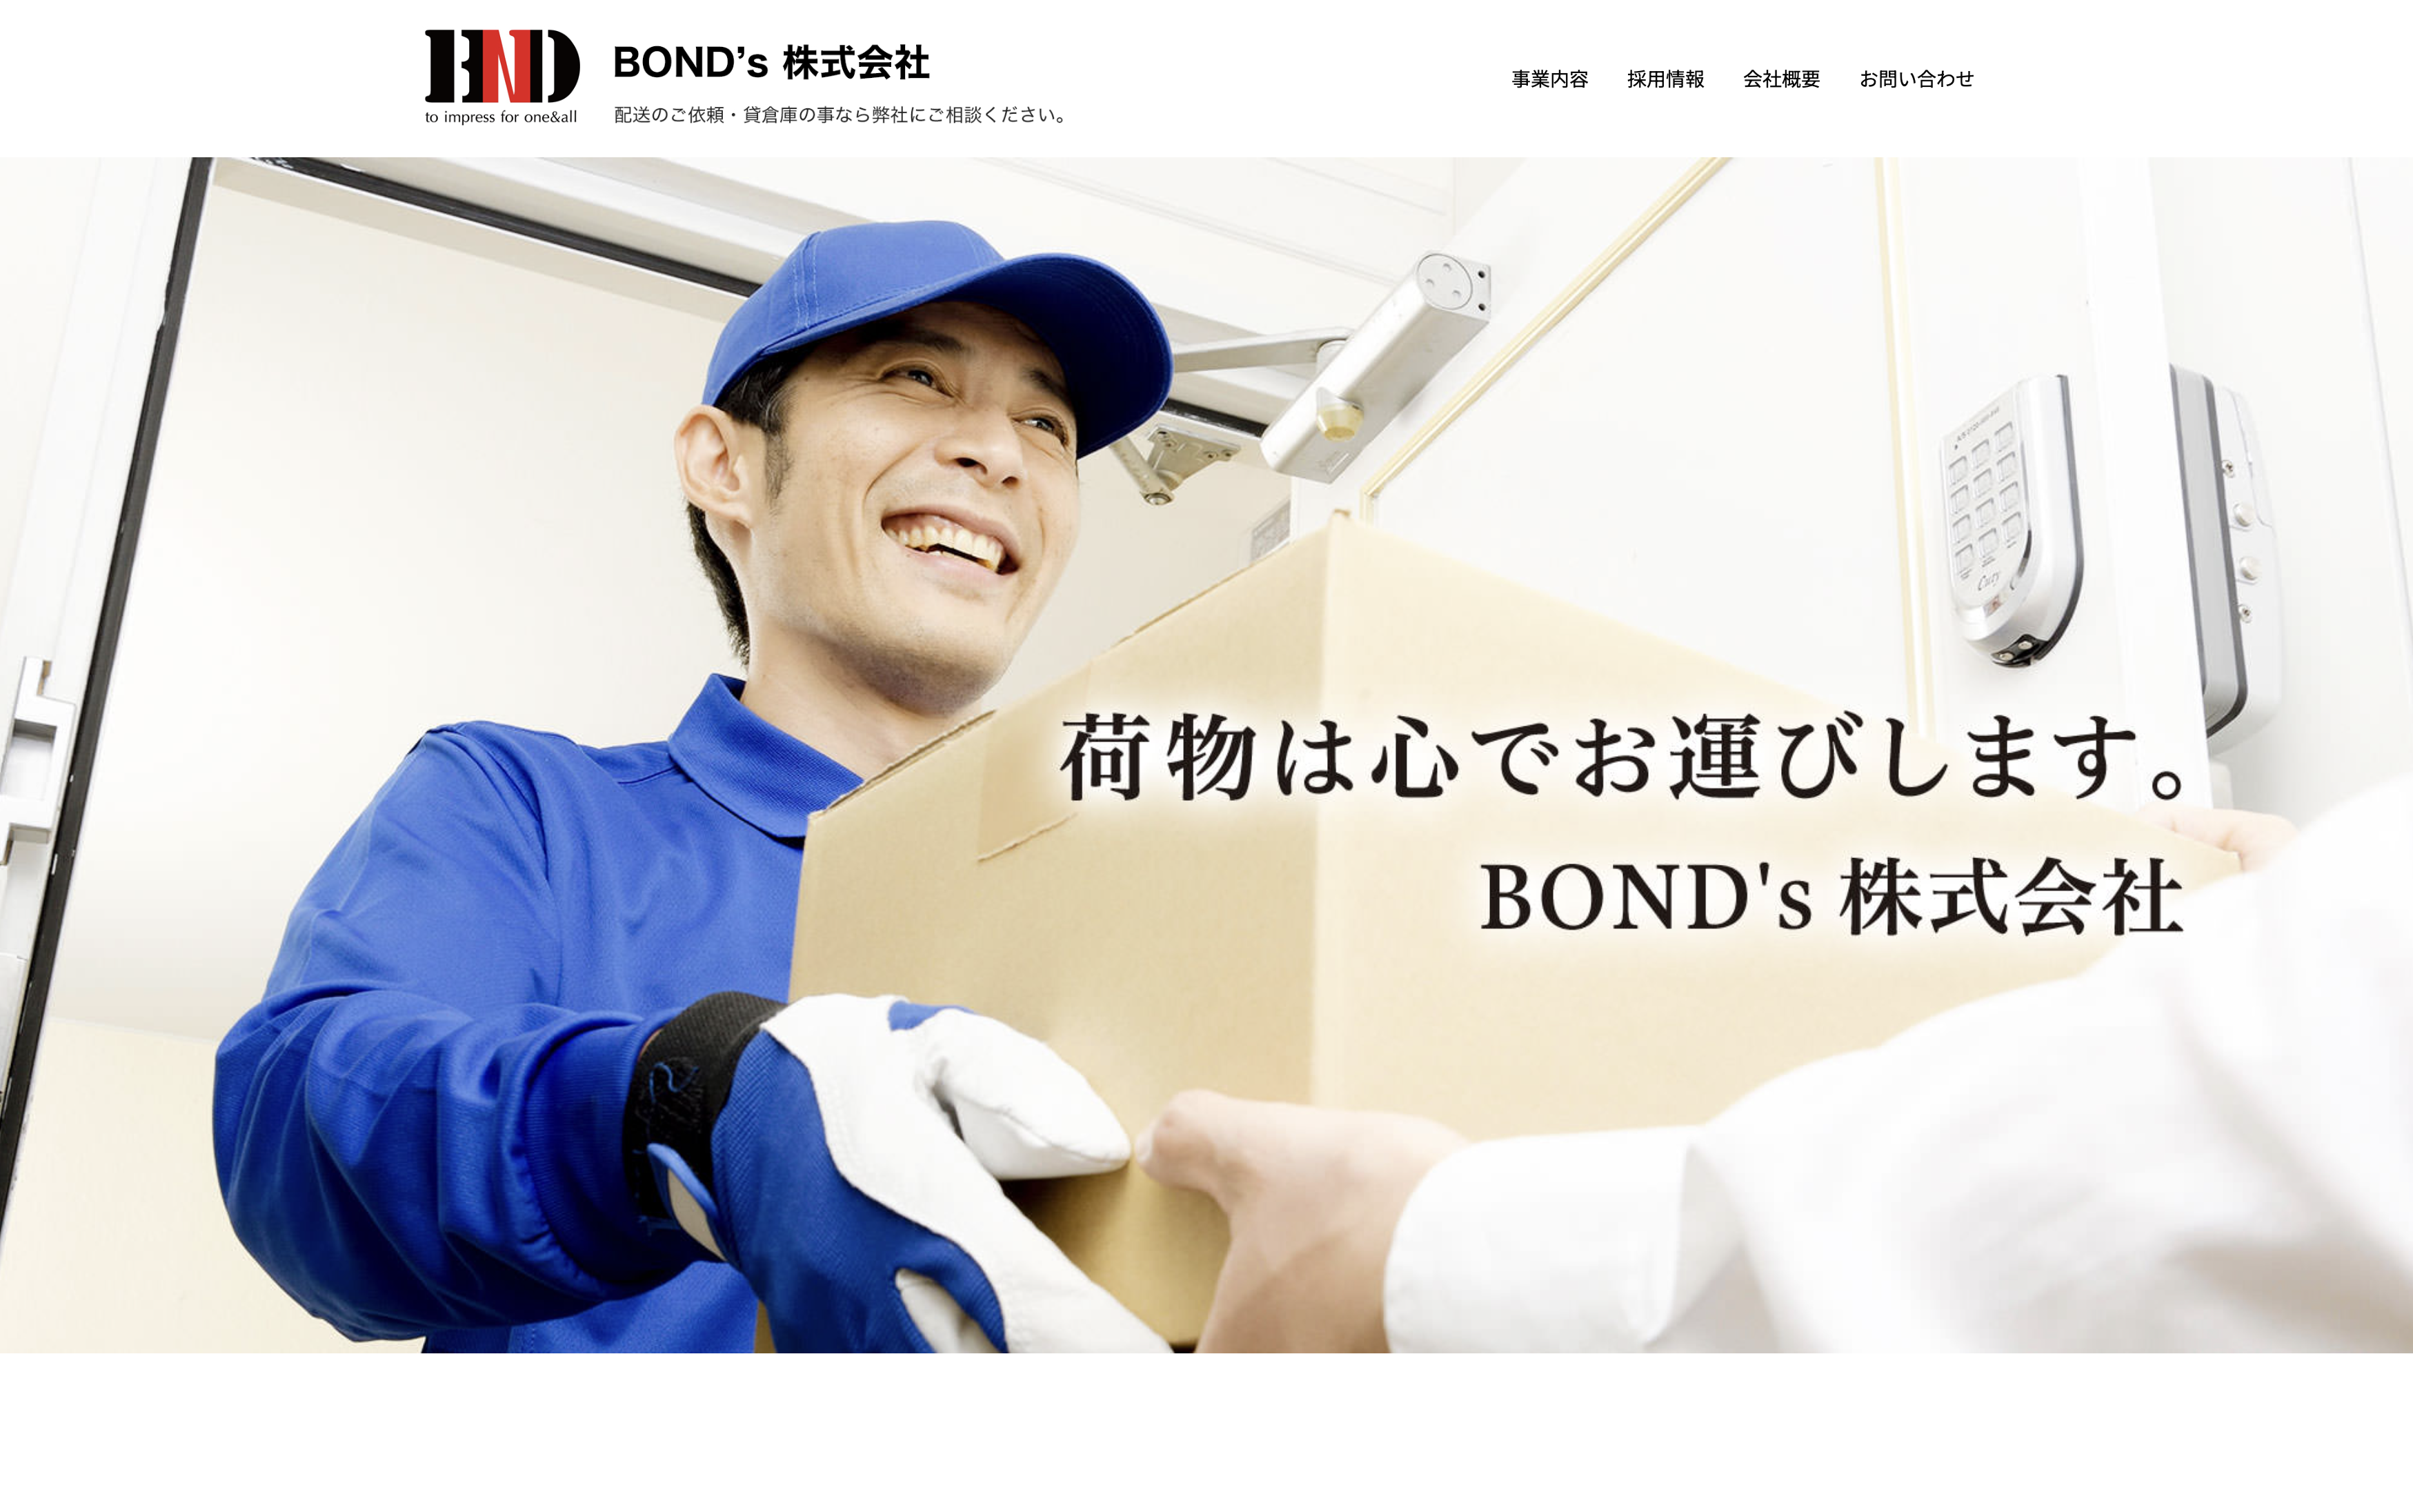 BOND’s株式会社のBOND's株式会社:運送サービス